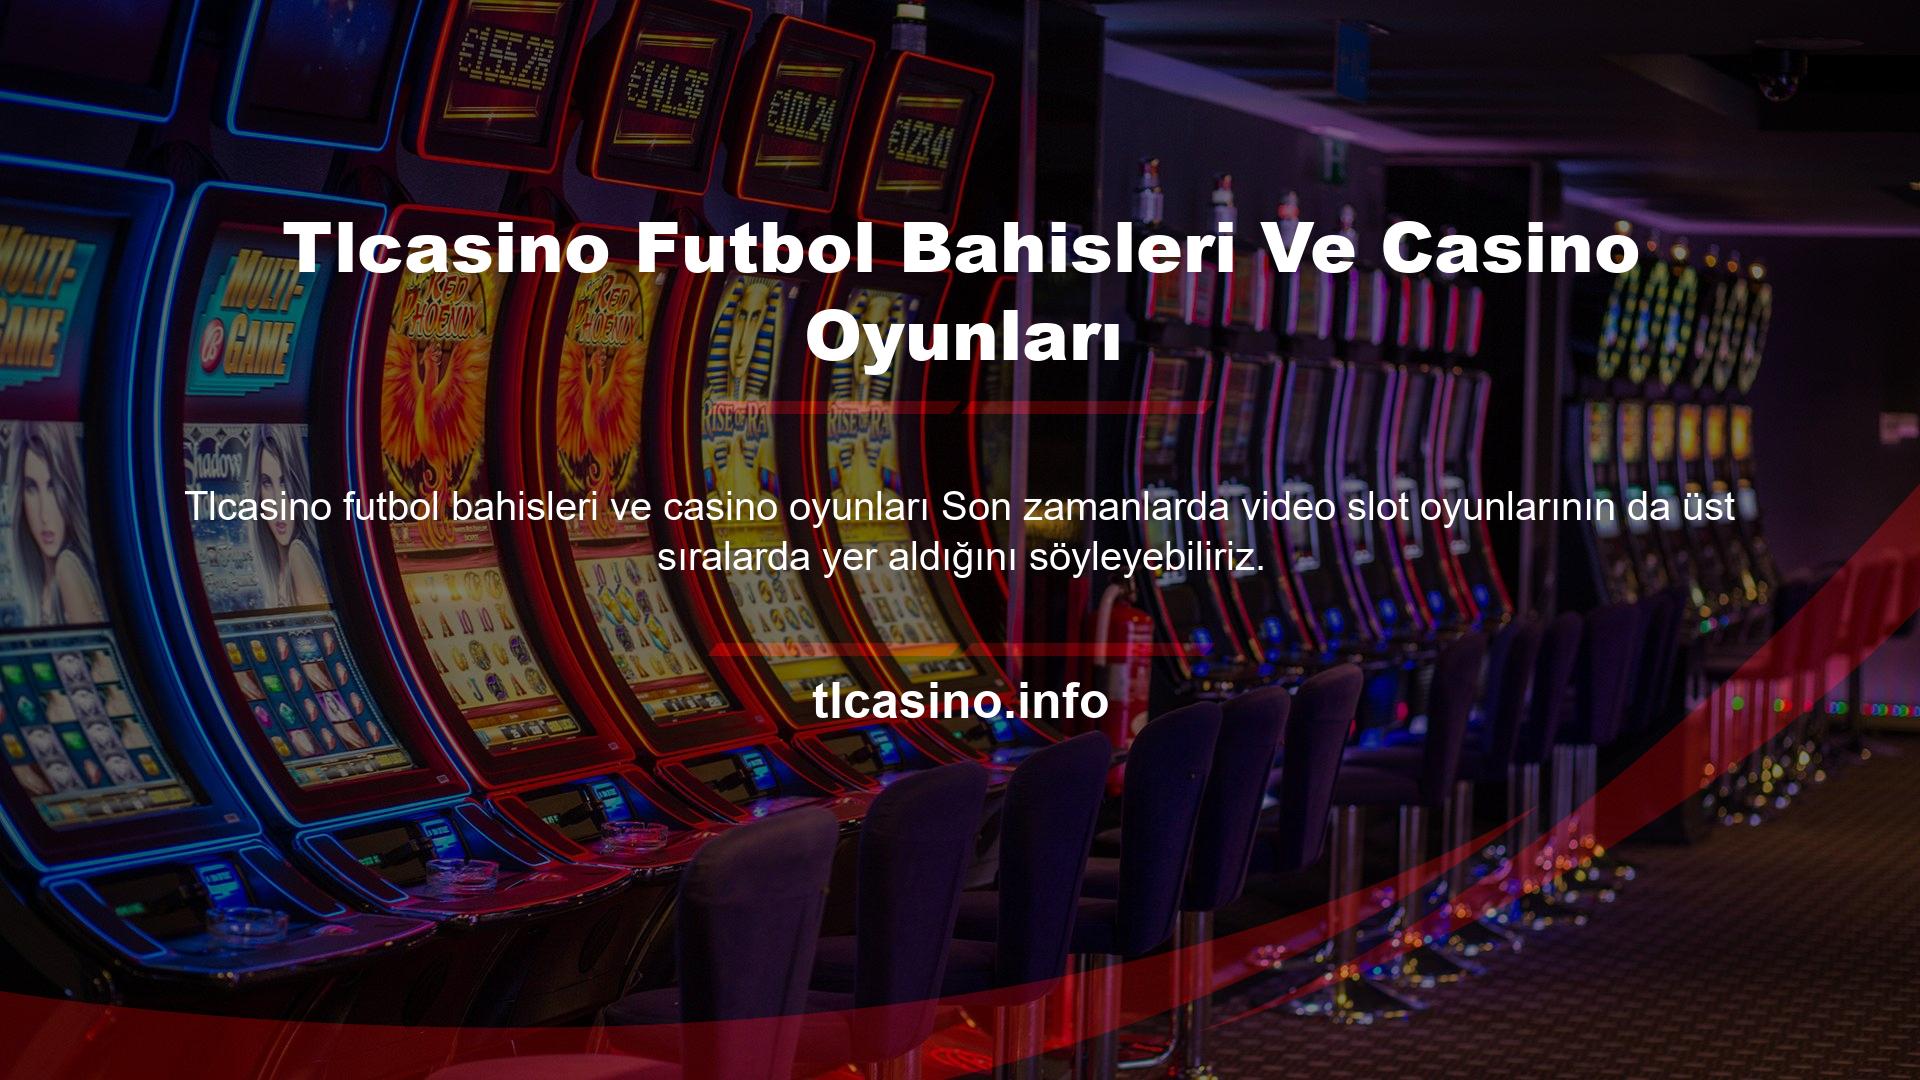 Sitenin Tlcasino Casino kategorisinde yer alan bu oyunlar ile deneyim kazandıkça nasıl oynandığını kolayca öğrenebilirsiniz